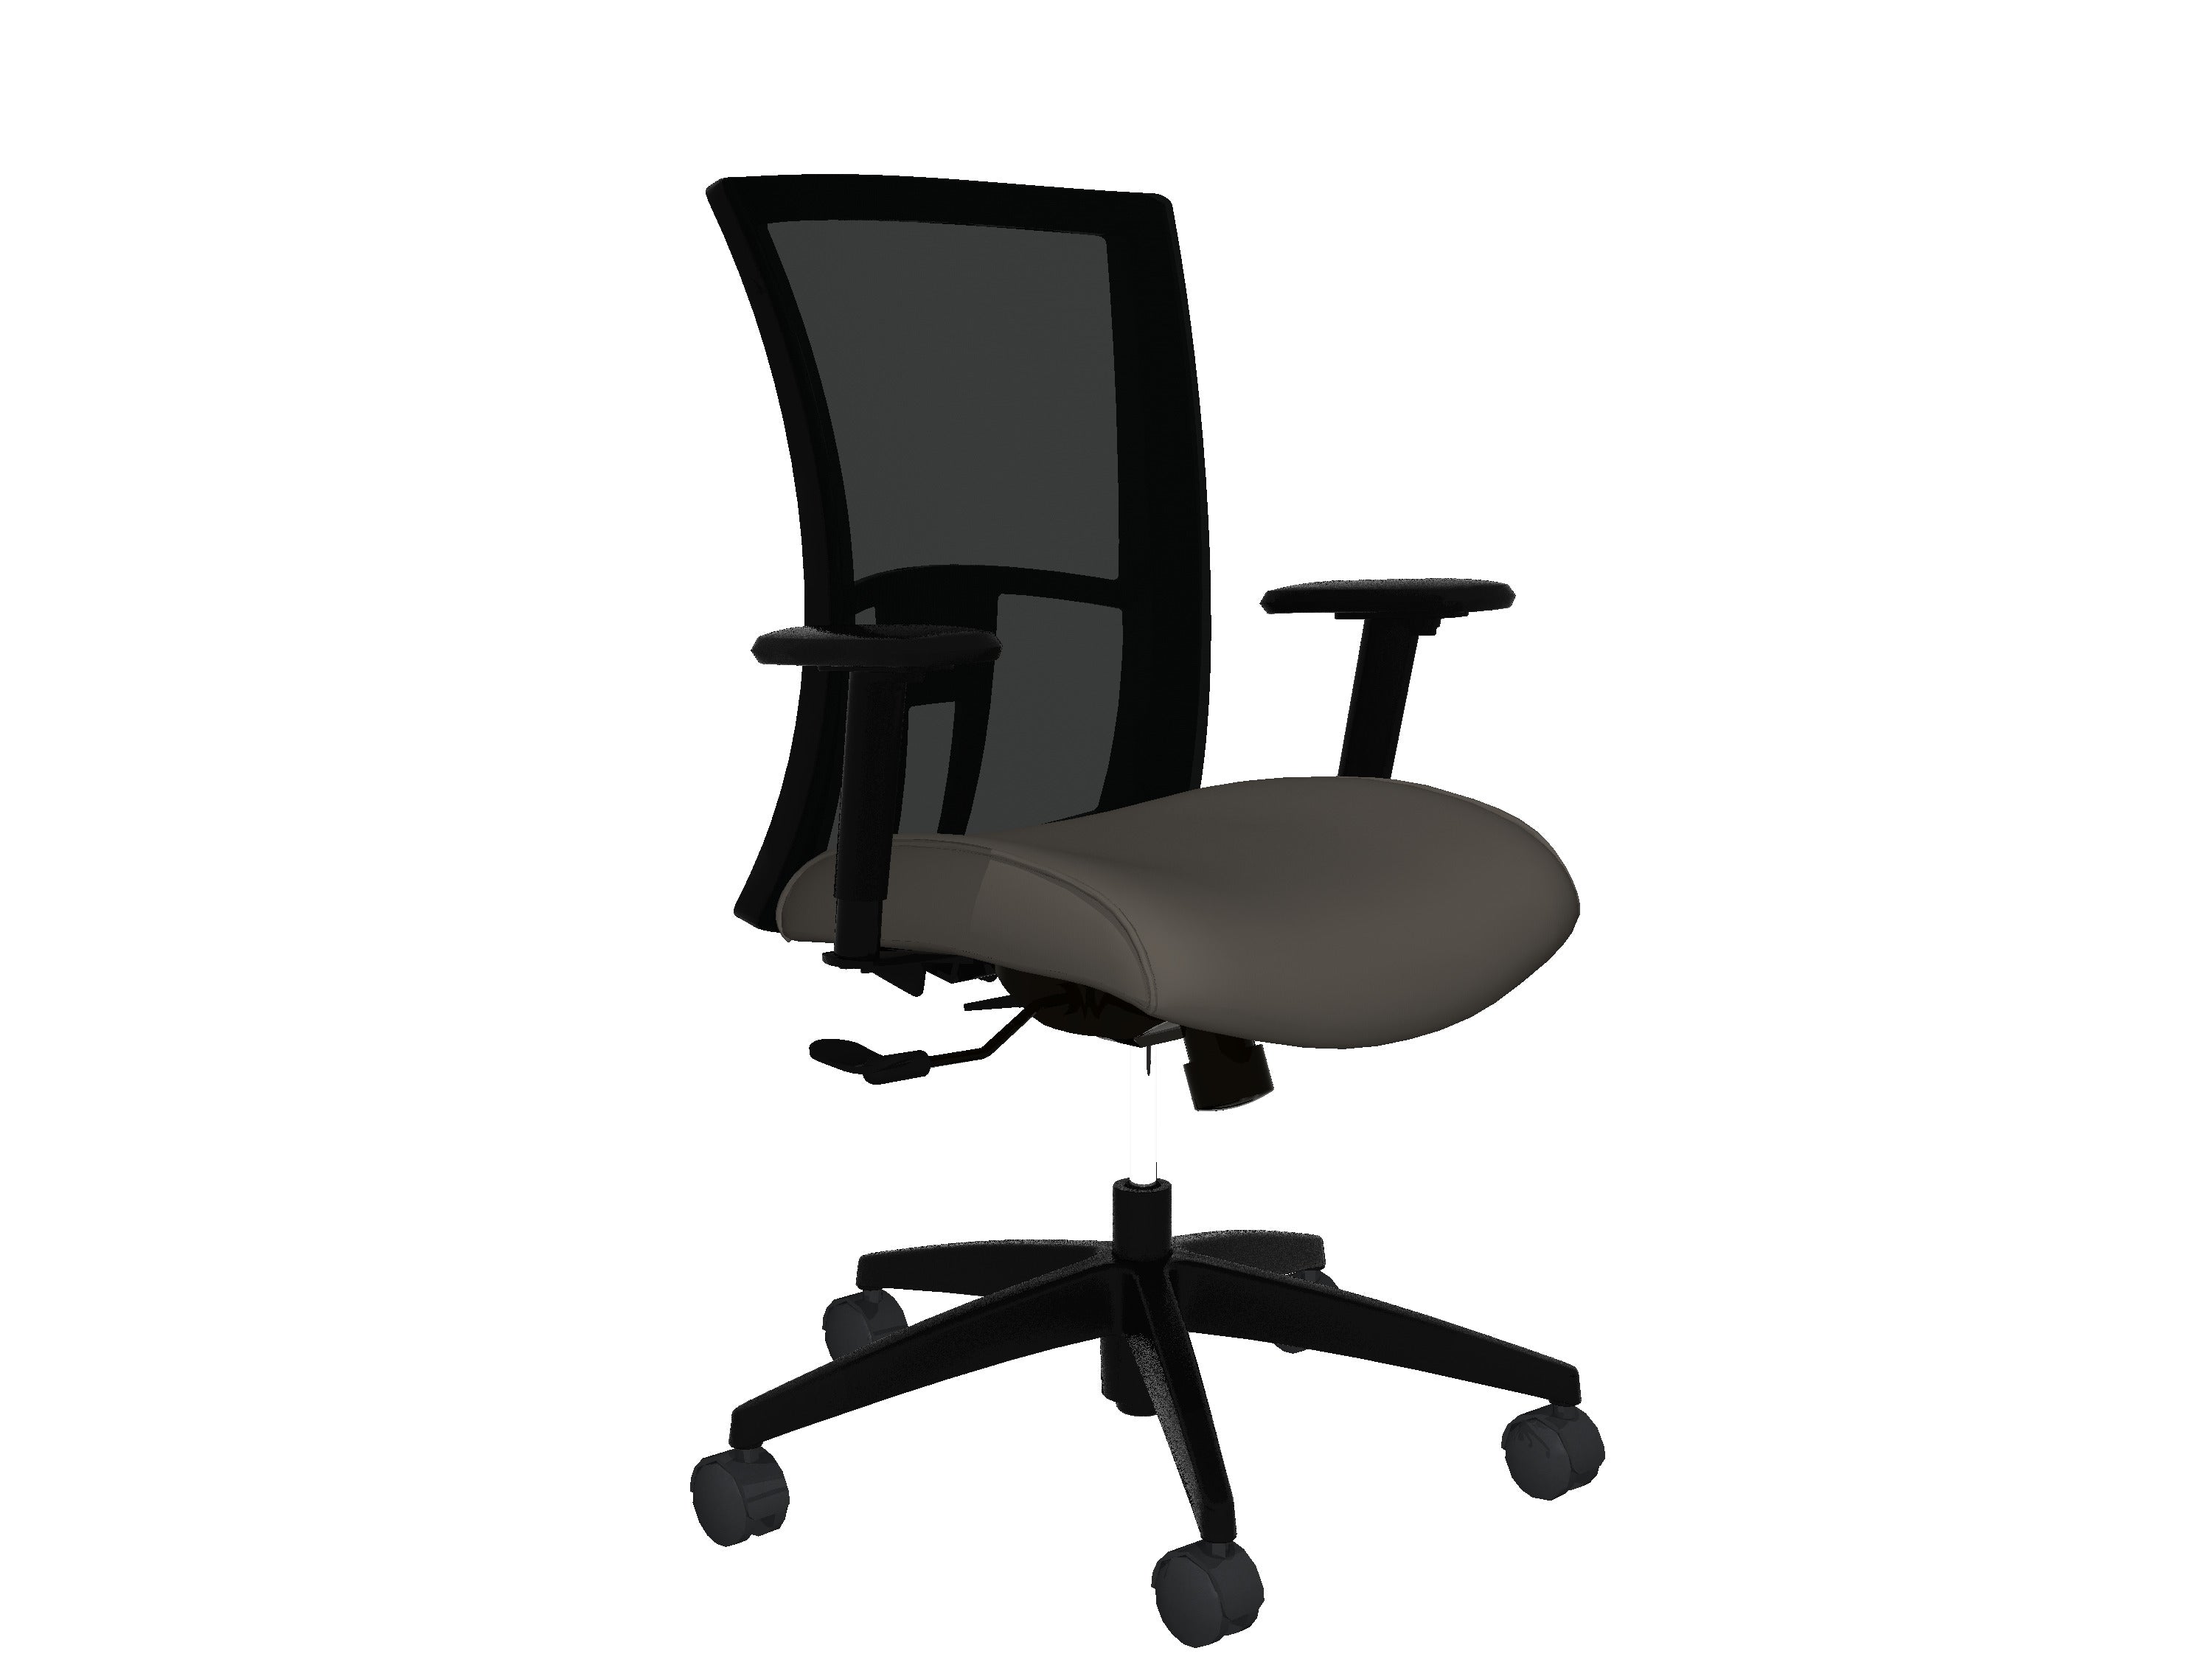 Global Vion – Sleek Black Mesh High Back Tilter Task Chair in Vinyl for the Modern Office, Home and Business.